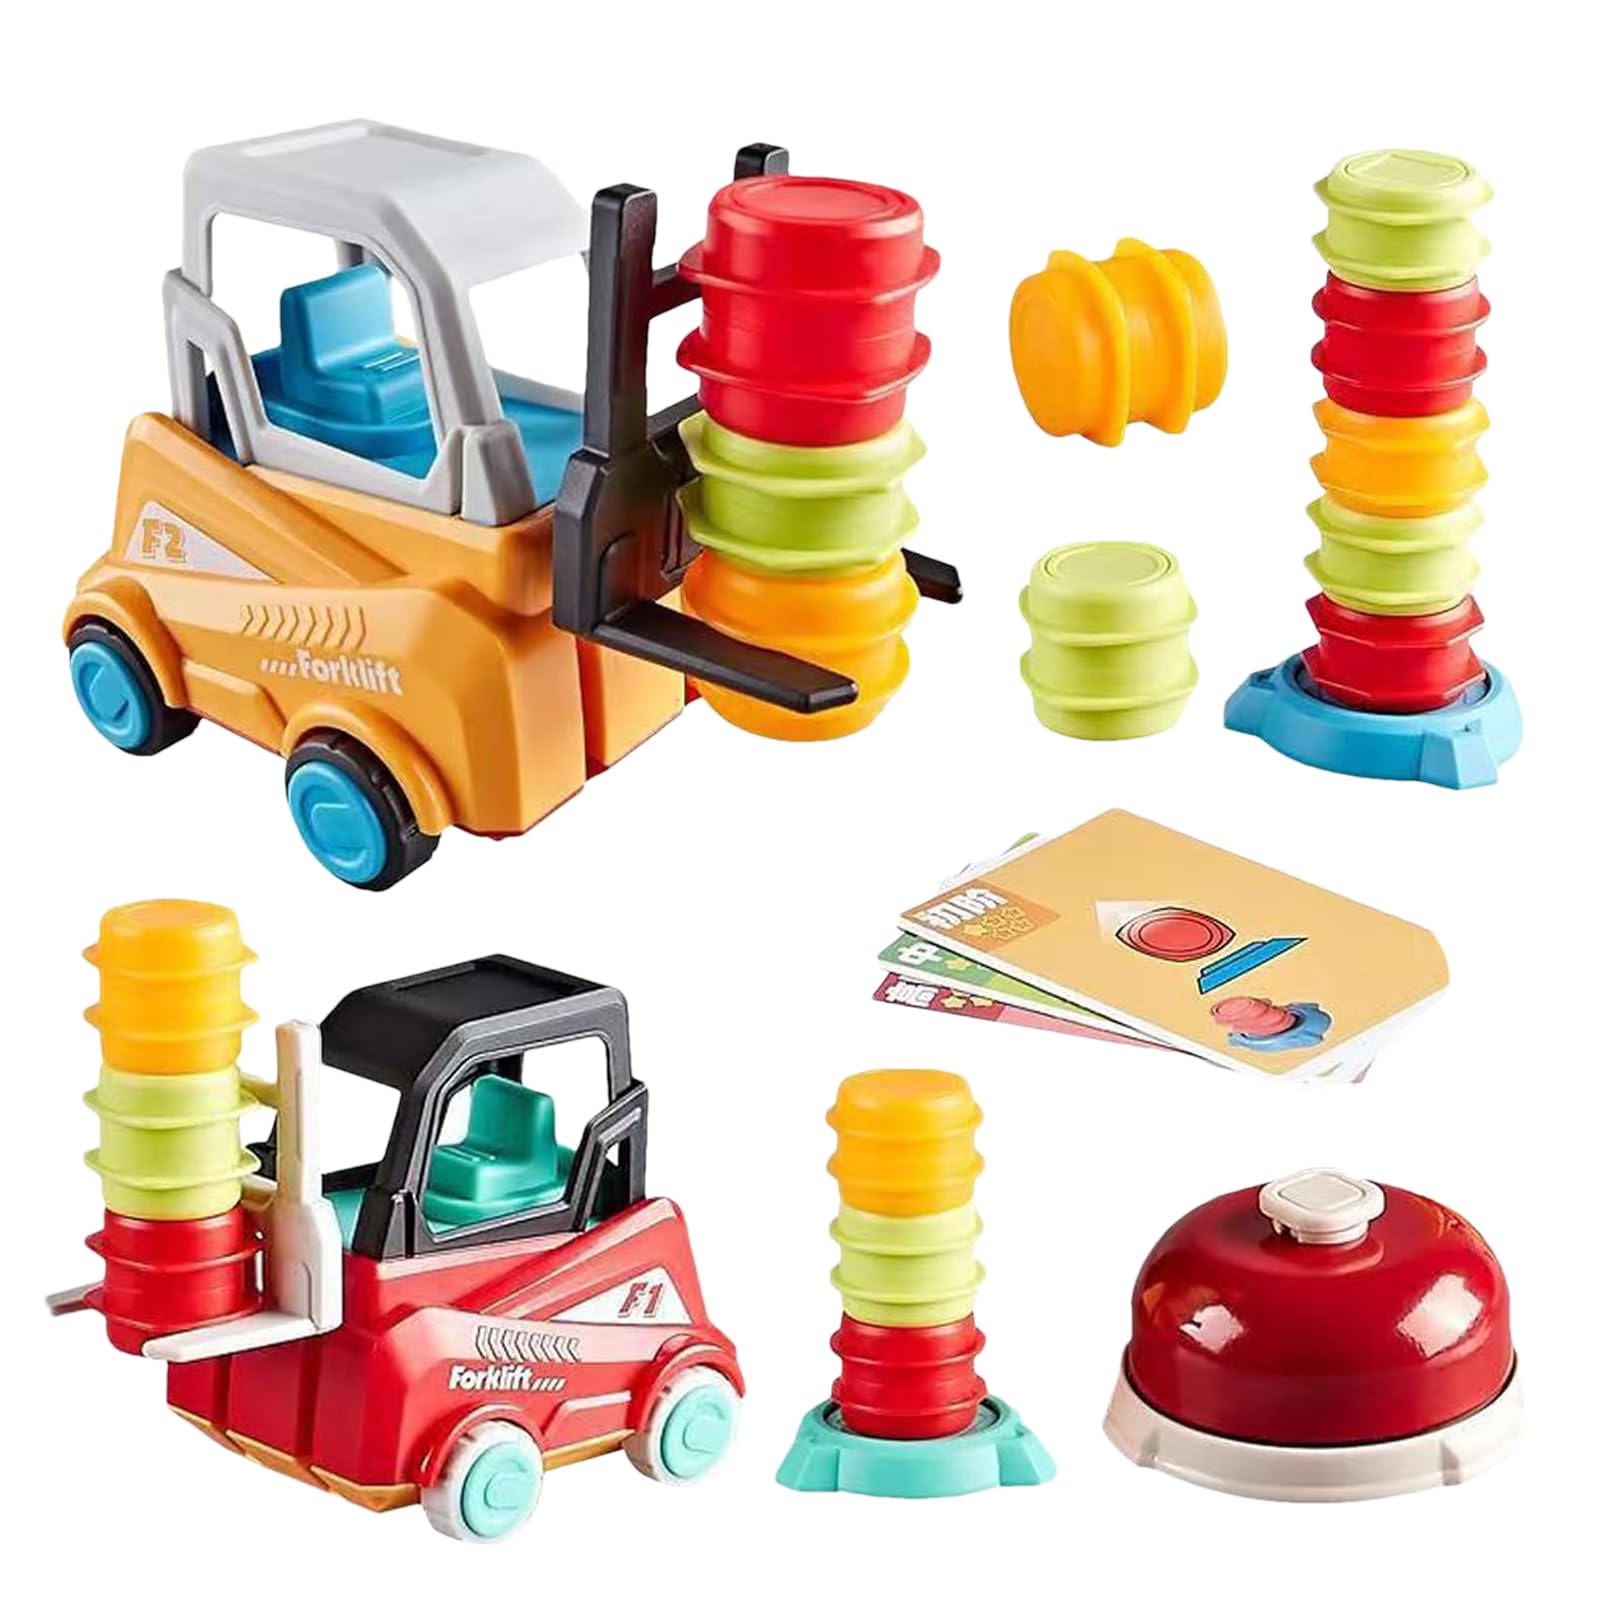 SZSS 建設車のおもちゃ スタッキングおもちゃ、2人で楽しめる知育玩具、幼児用おもちゃ、子供用安 全フォークリフトトラックのおもちゃ、男の子、女の子、8歳以上、子供の誕生日新年のギフト用おもちゃギフト。